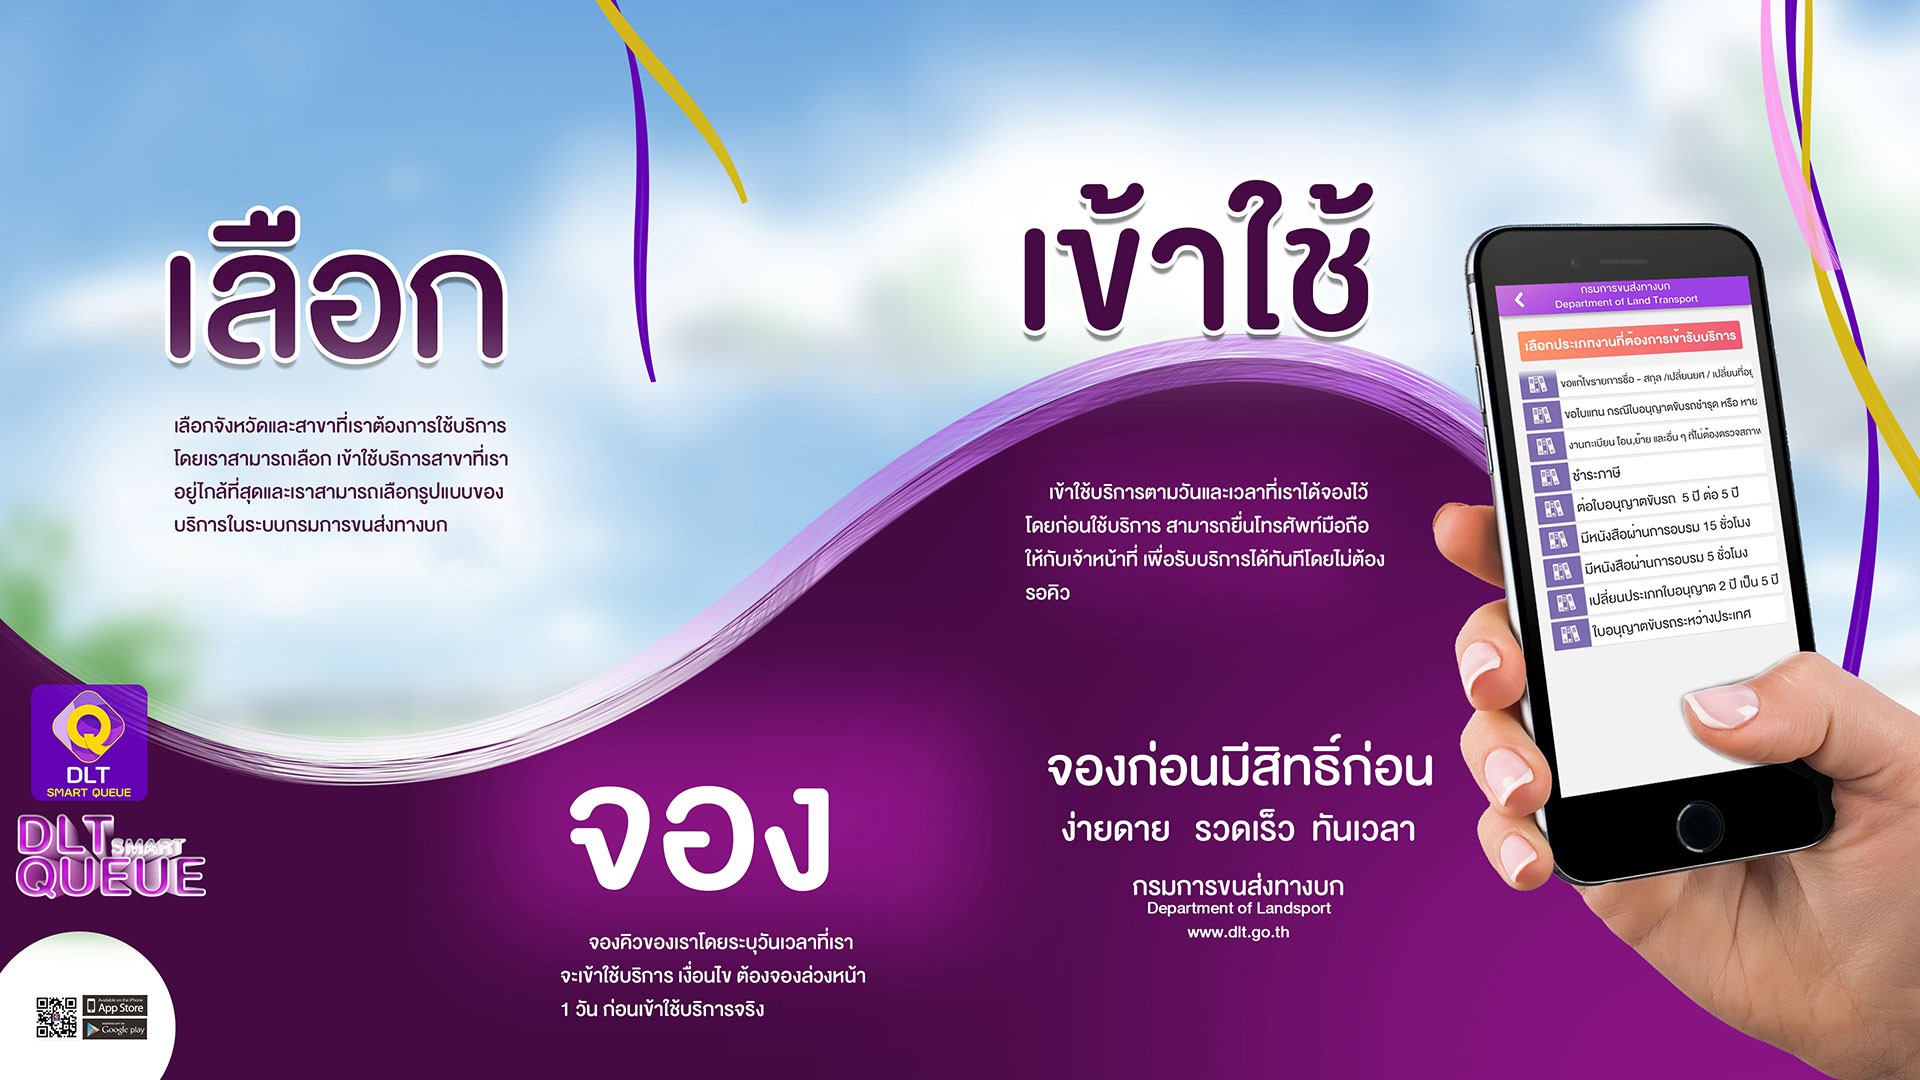 เปิด 7 ขั้นตอน “จองคิวต่อใบขับขี่” ผ่านแอป Dlt Smart Queue ง่ายๆที่นี่ -  Chiang Mai News